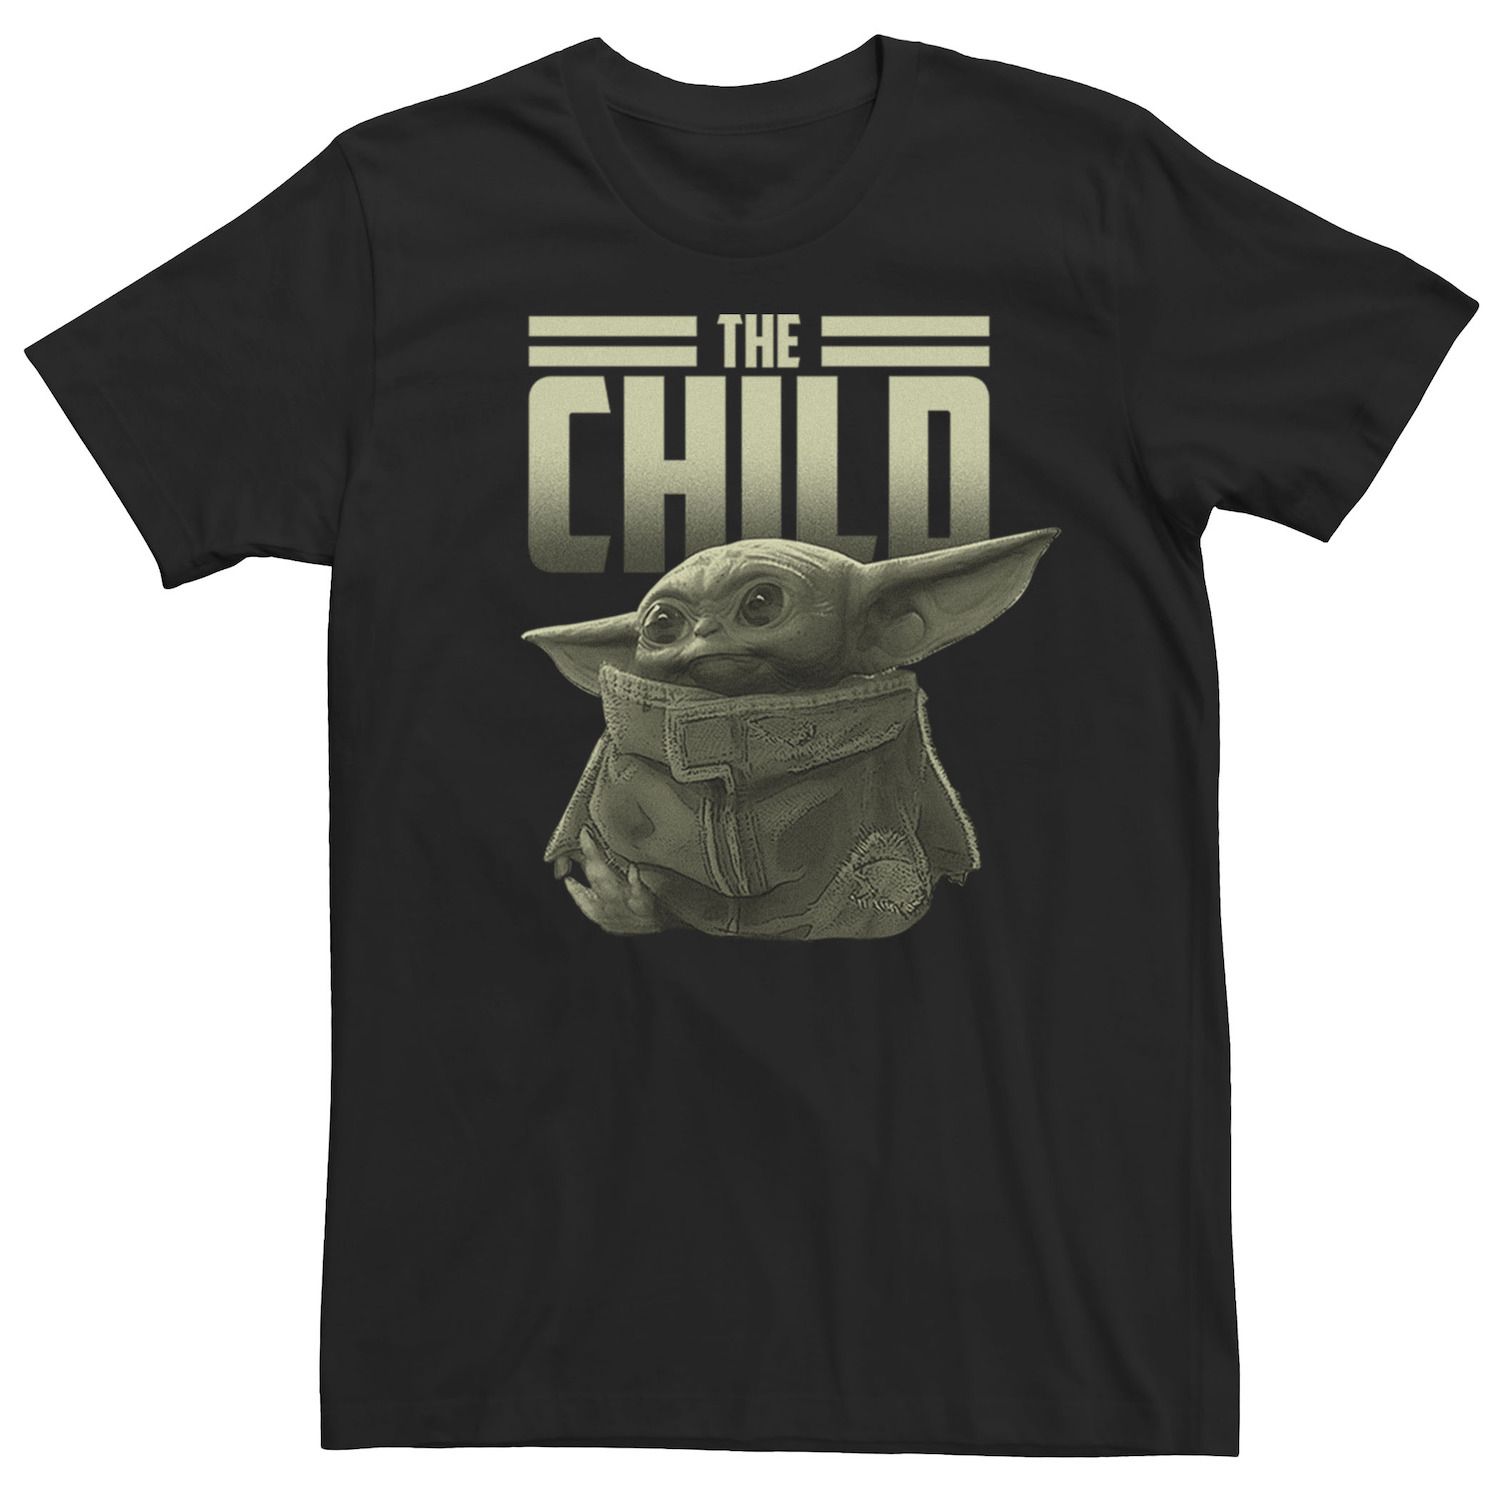 Мужская футболка с портретом «Звездные войны, Мандалорец, Ребенок, известный как Малыш Йода» Star Wars, черный